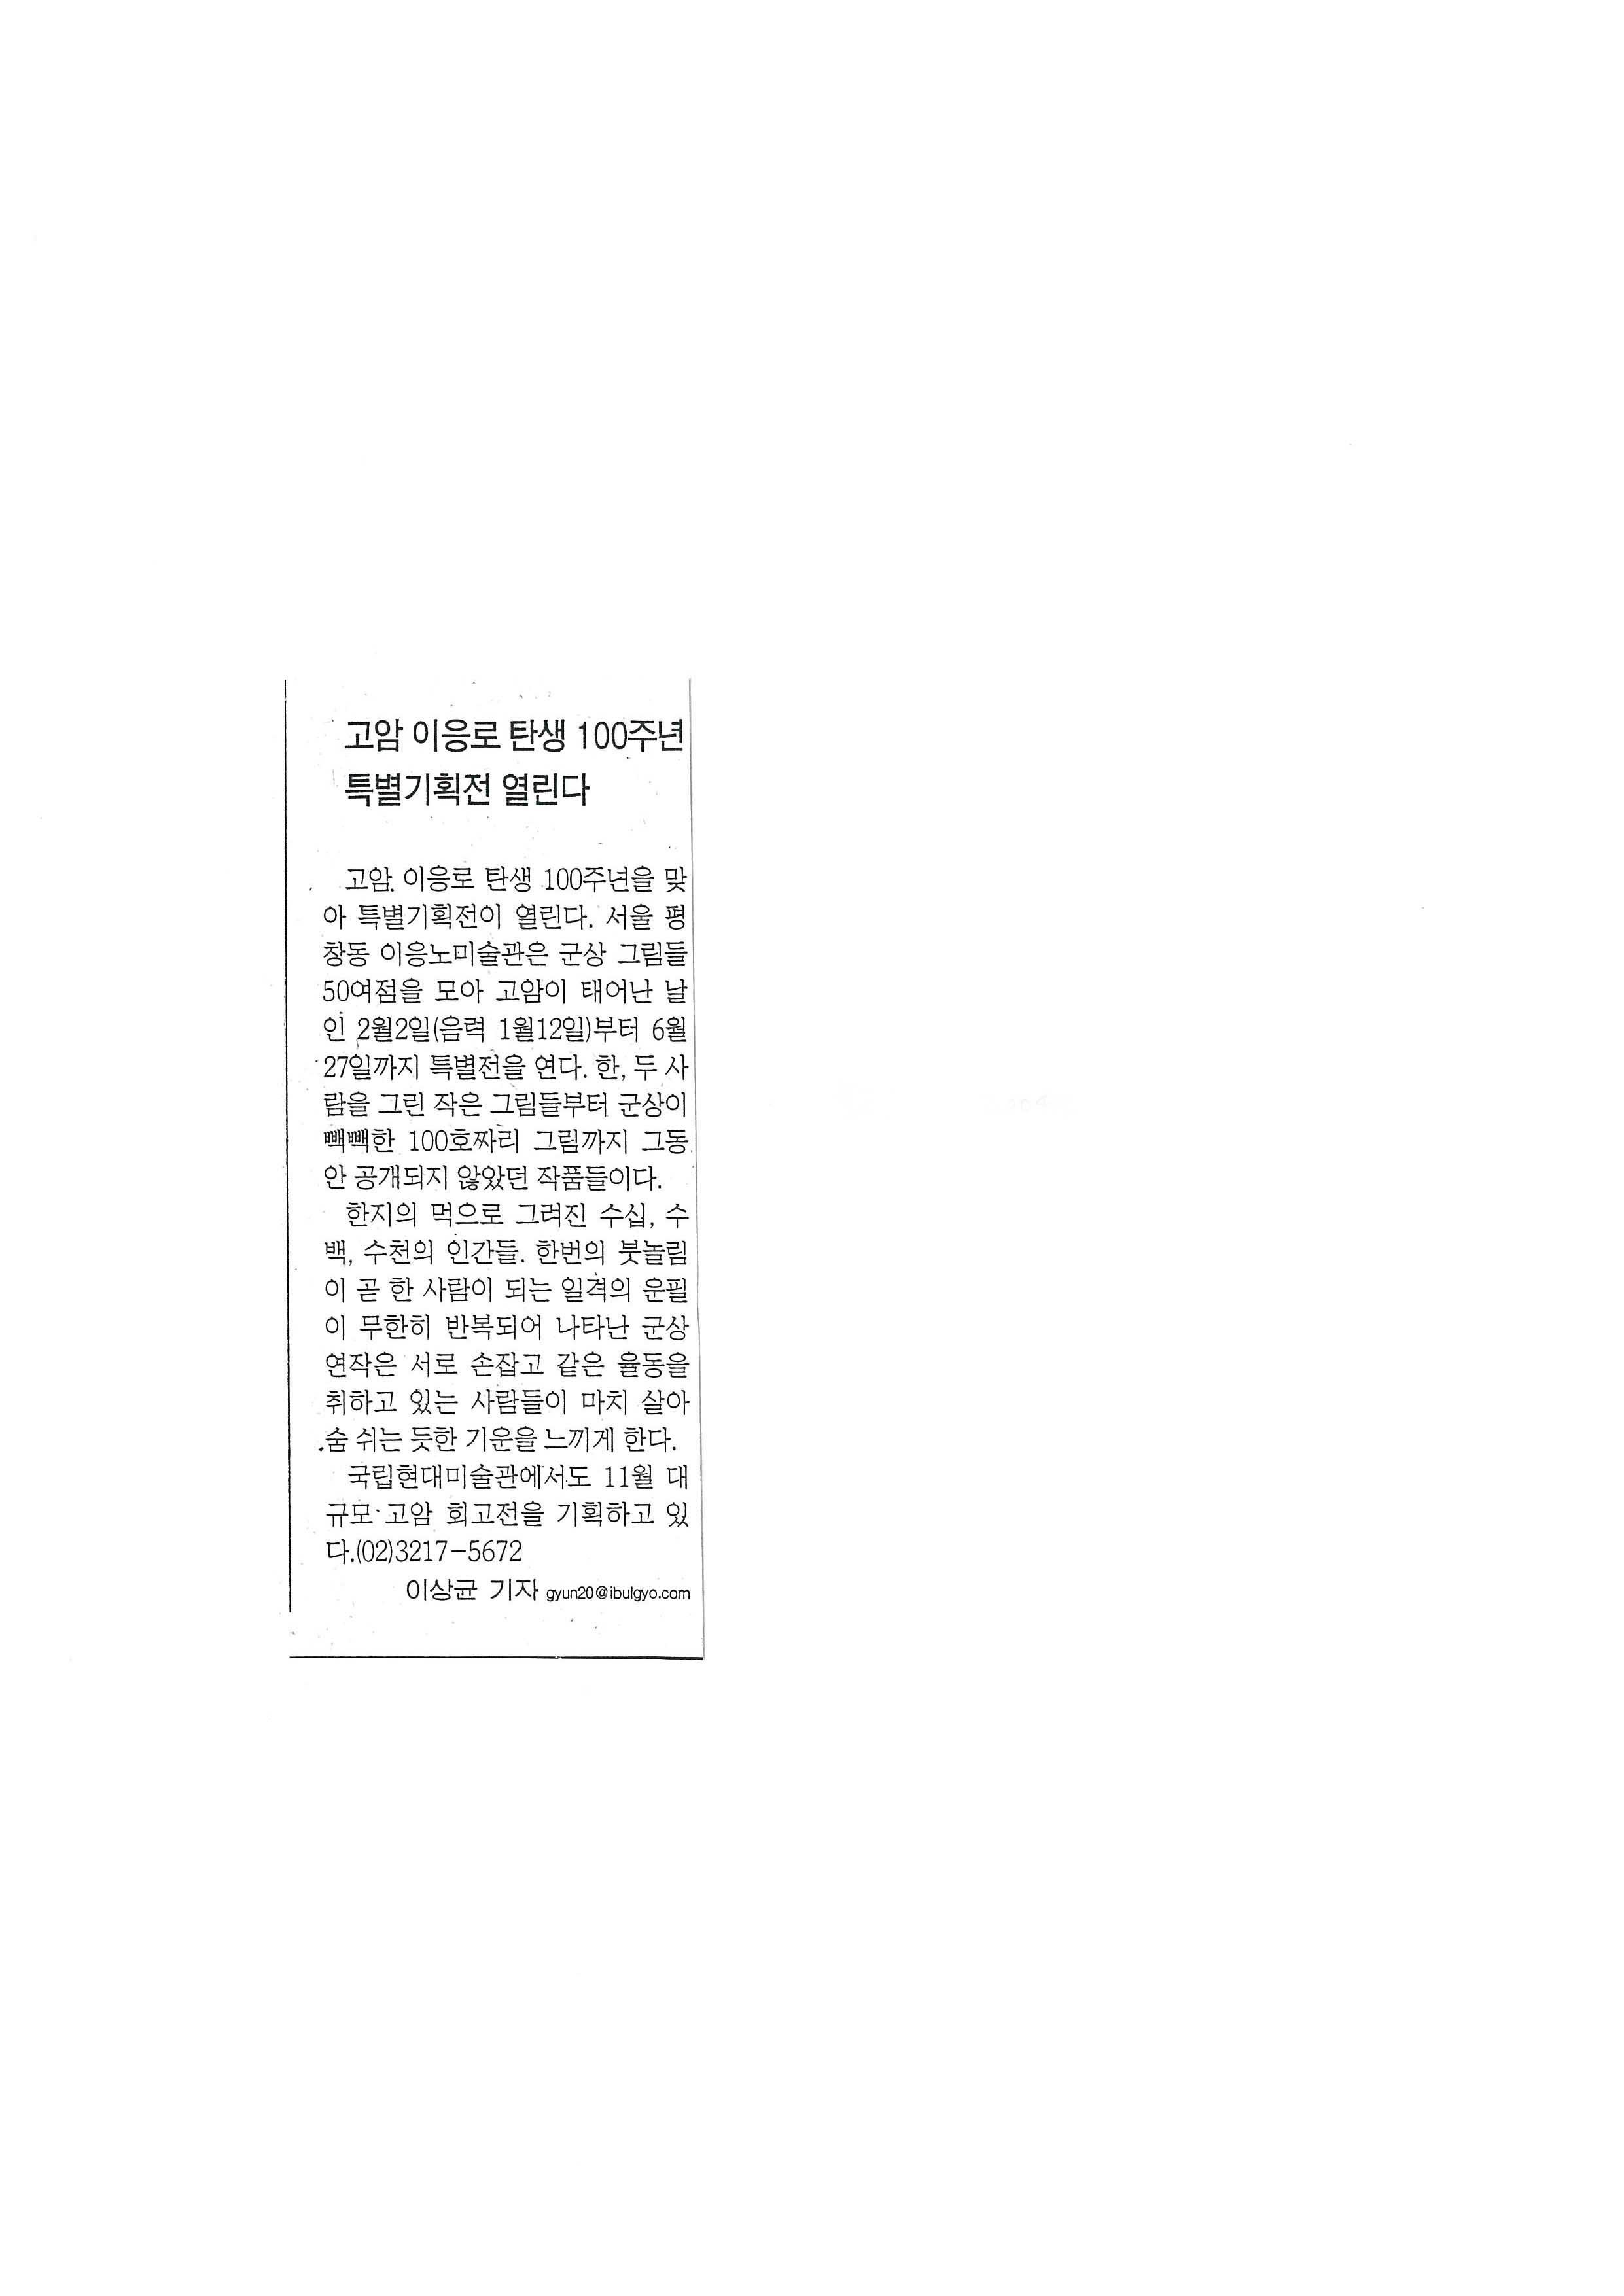 「고암 이응로 탄생 100주년 특별기획전 열린다」, 『불교신문』